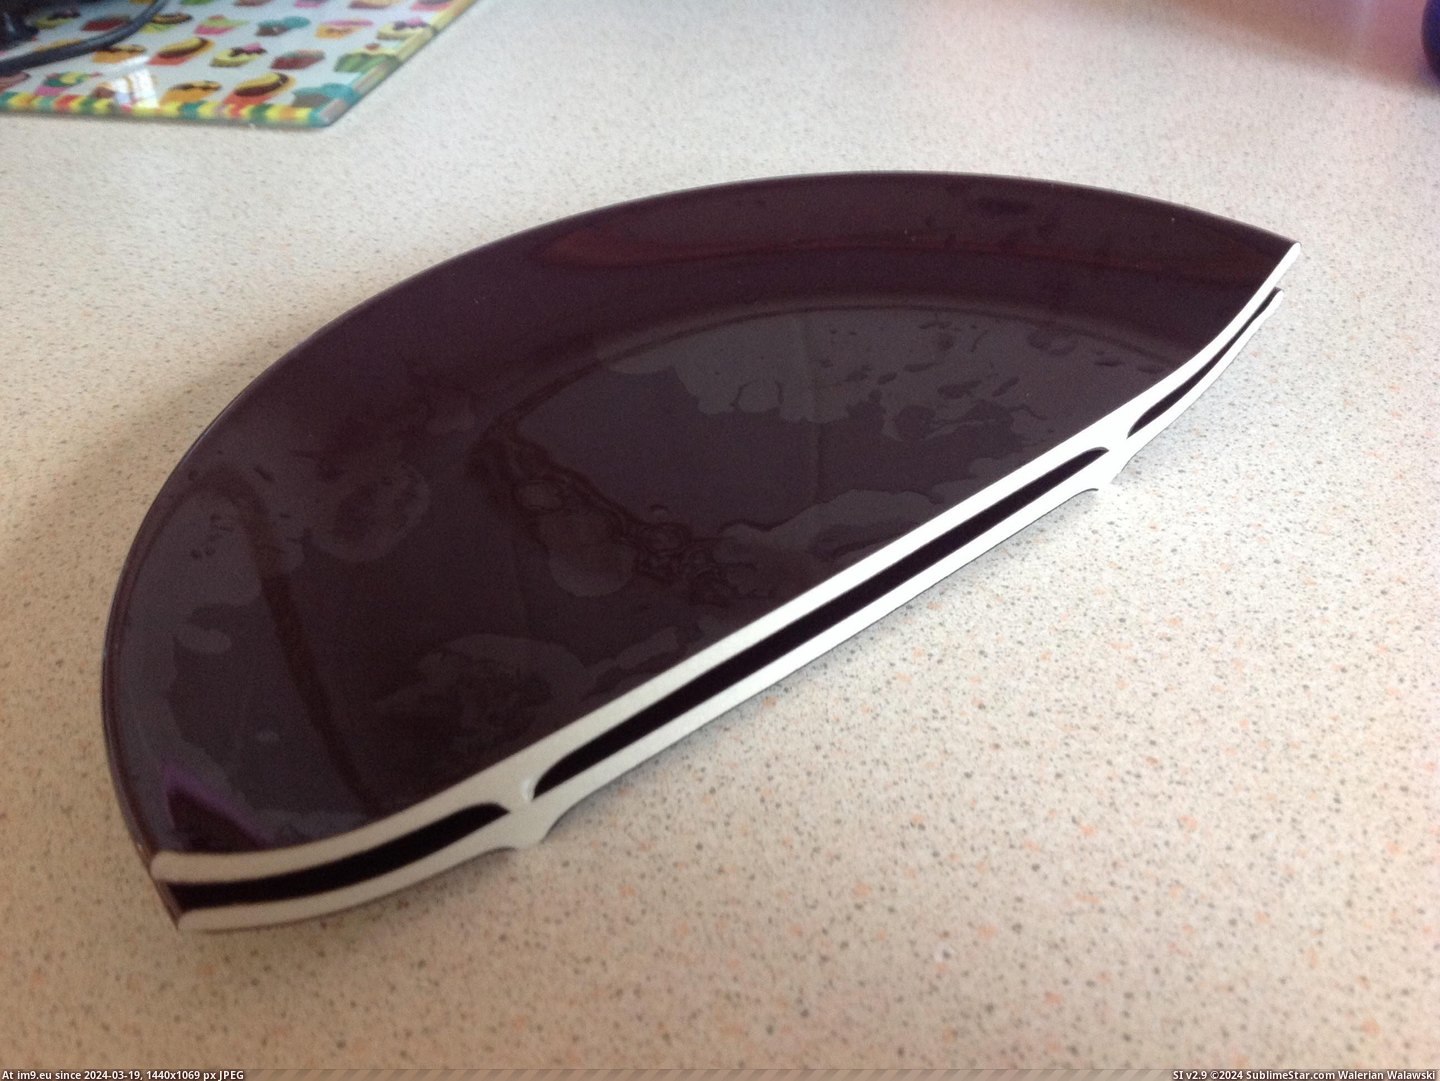 #Broke #Plate #Washing #Dropped [Mildlyinteresting] Dropped a plate when washing up - it broke exactly in half Pic. (Obraz z album My r/MILDLYINTERESTING favs))